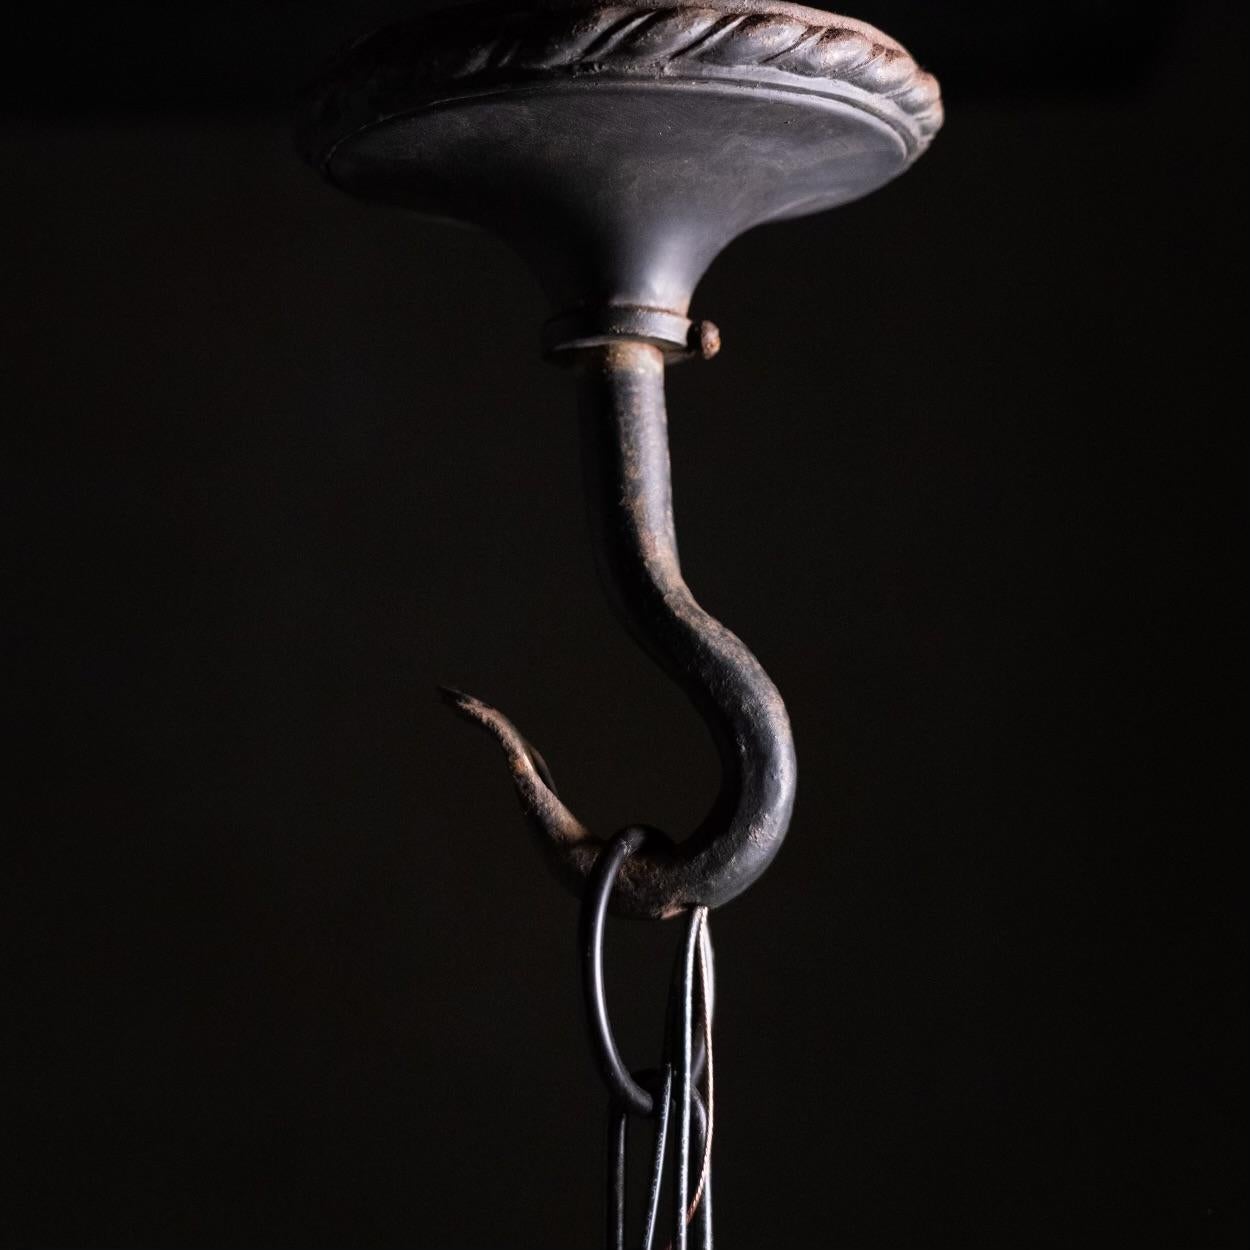 Ein schönes Eisen gotische Pendelleuchte aus Italien mit schönen Bronze dekorative Details mit original Milchglasscheiben ..dies ist eine solide gute Licht bereit für die Installation getestet und CSA komplett .

AUS EINER PRIVATSAMMLUNG ERWORBEN 